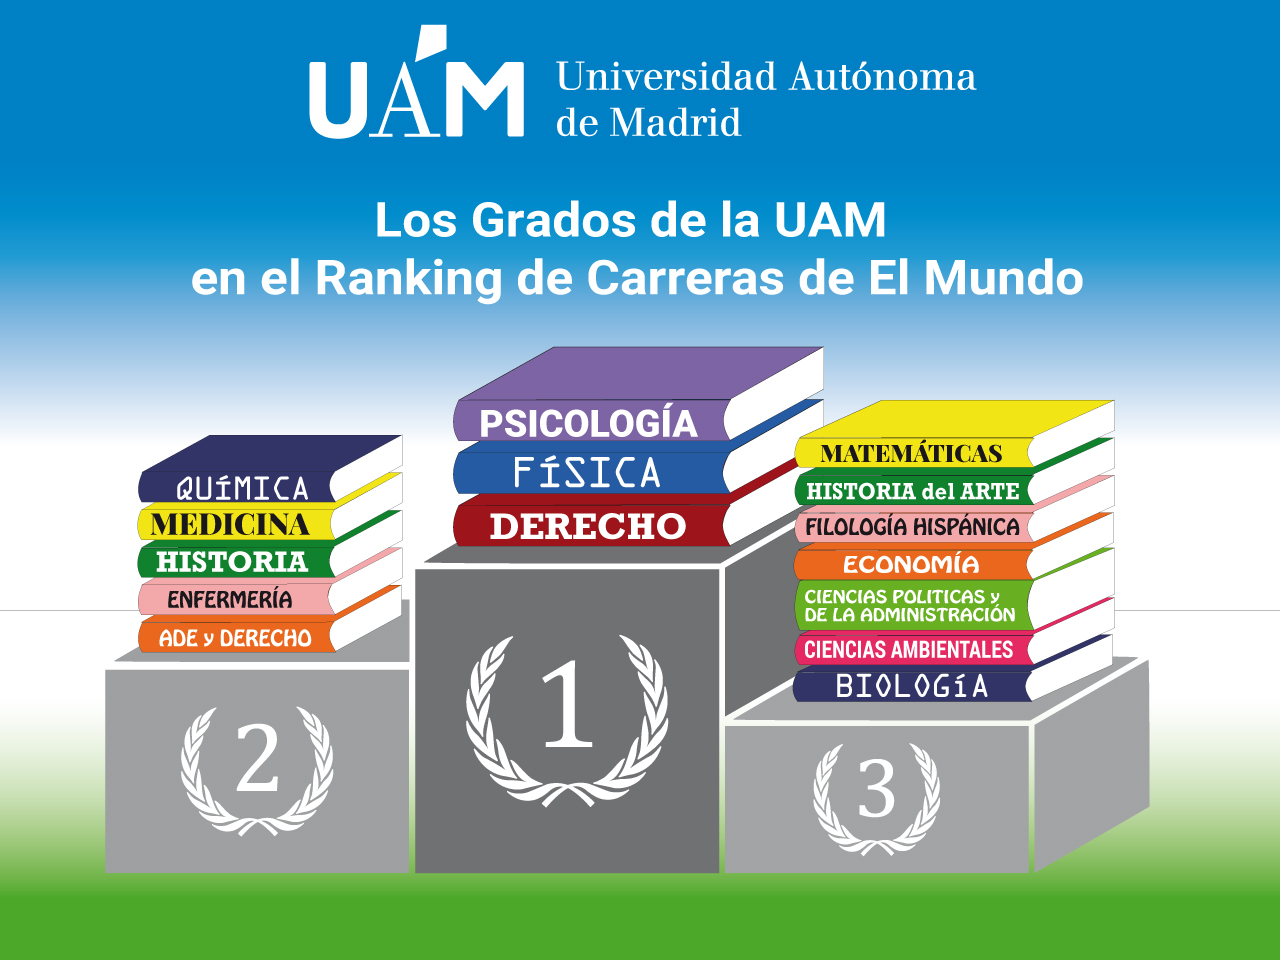 La UAM, mejor universidad estudiar Derecho, Física y Psicología, según el 'ranking' de El Mundo